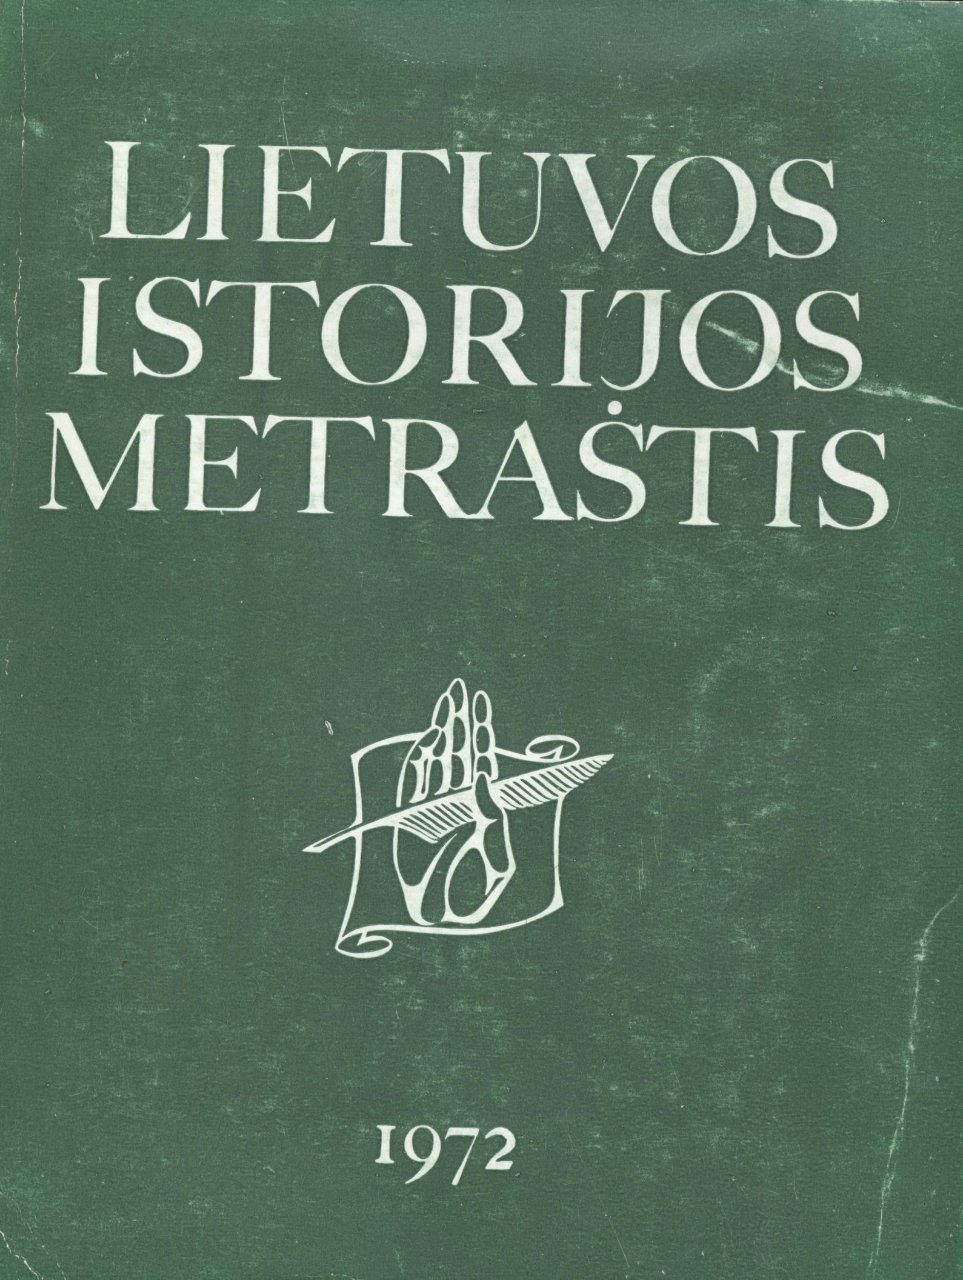 Lietuvos istorijos metraštis 1972 metai